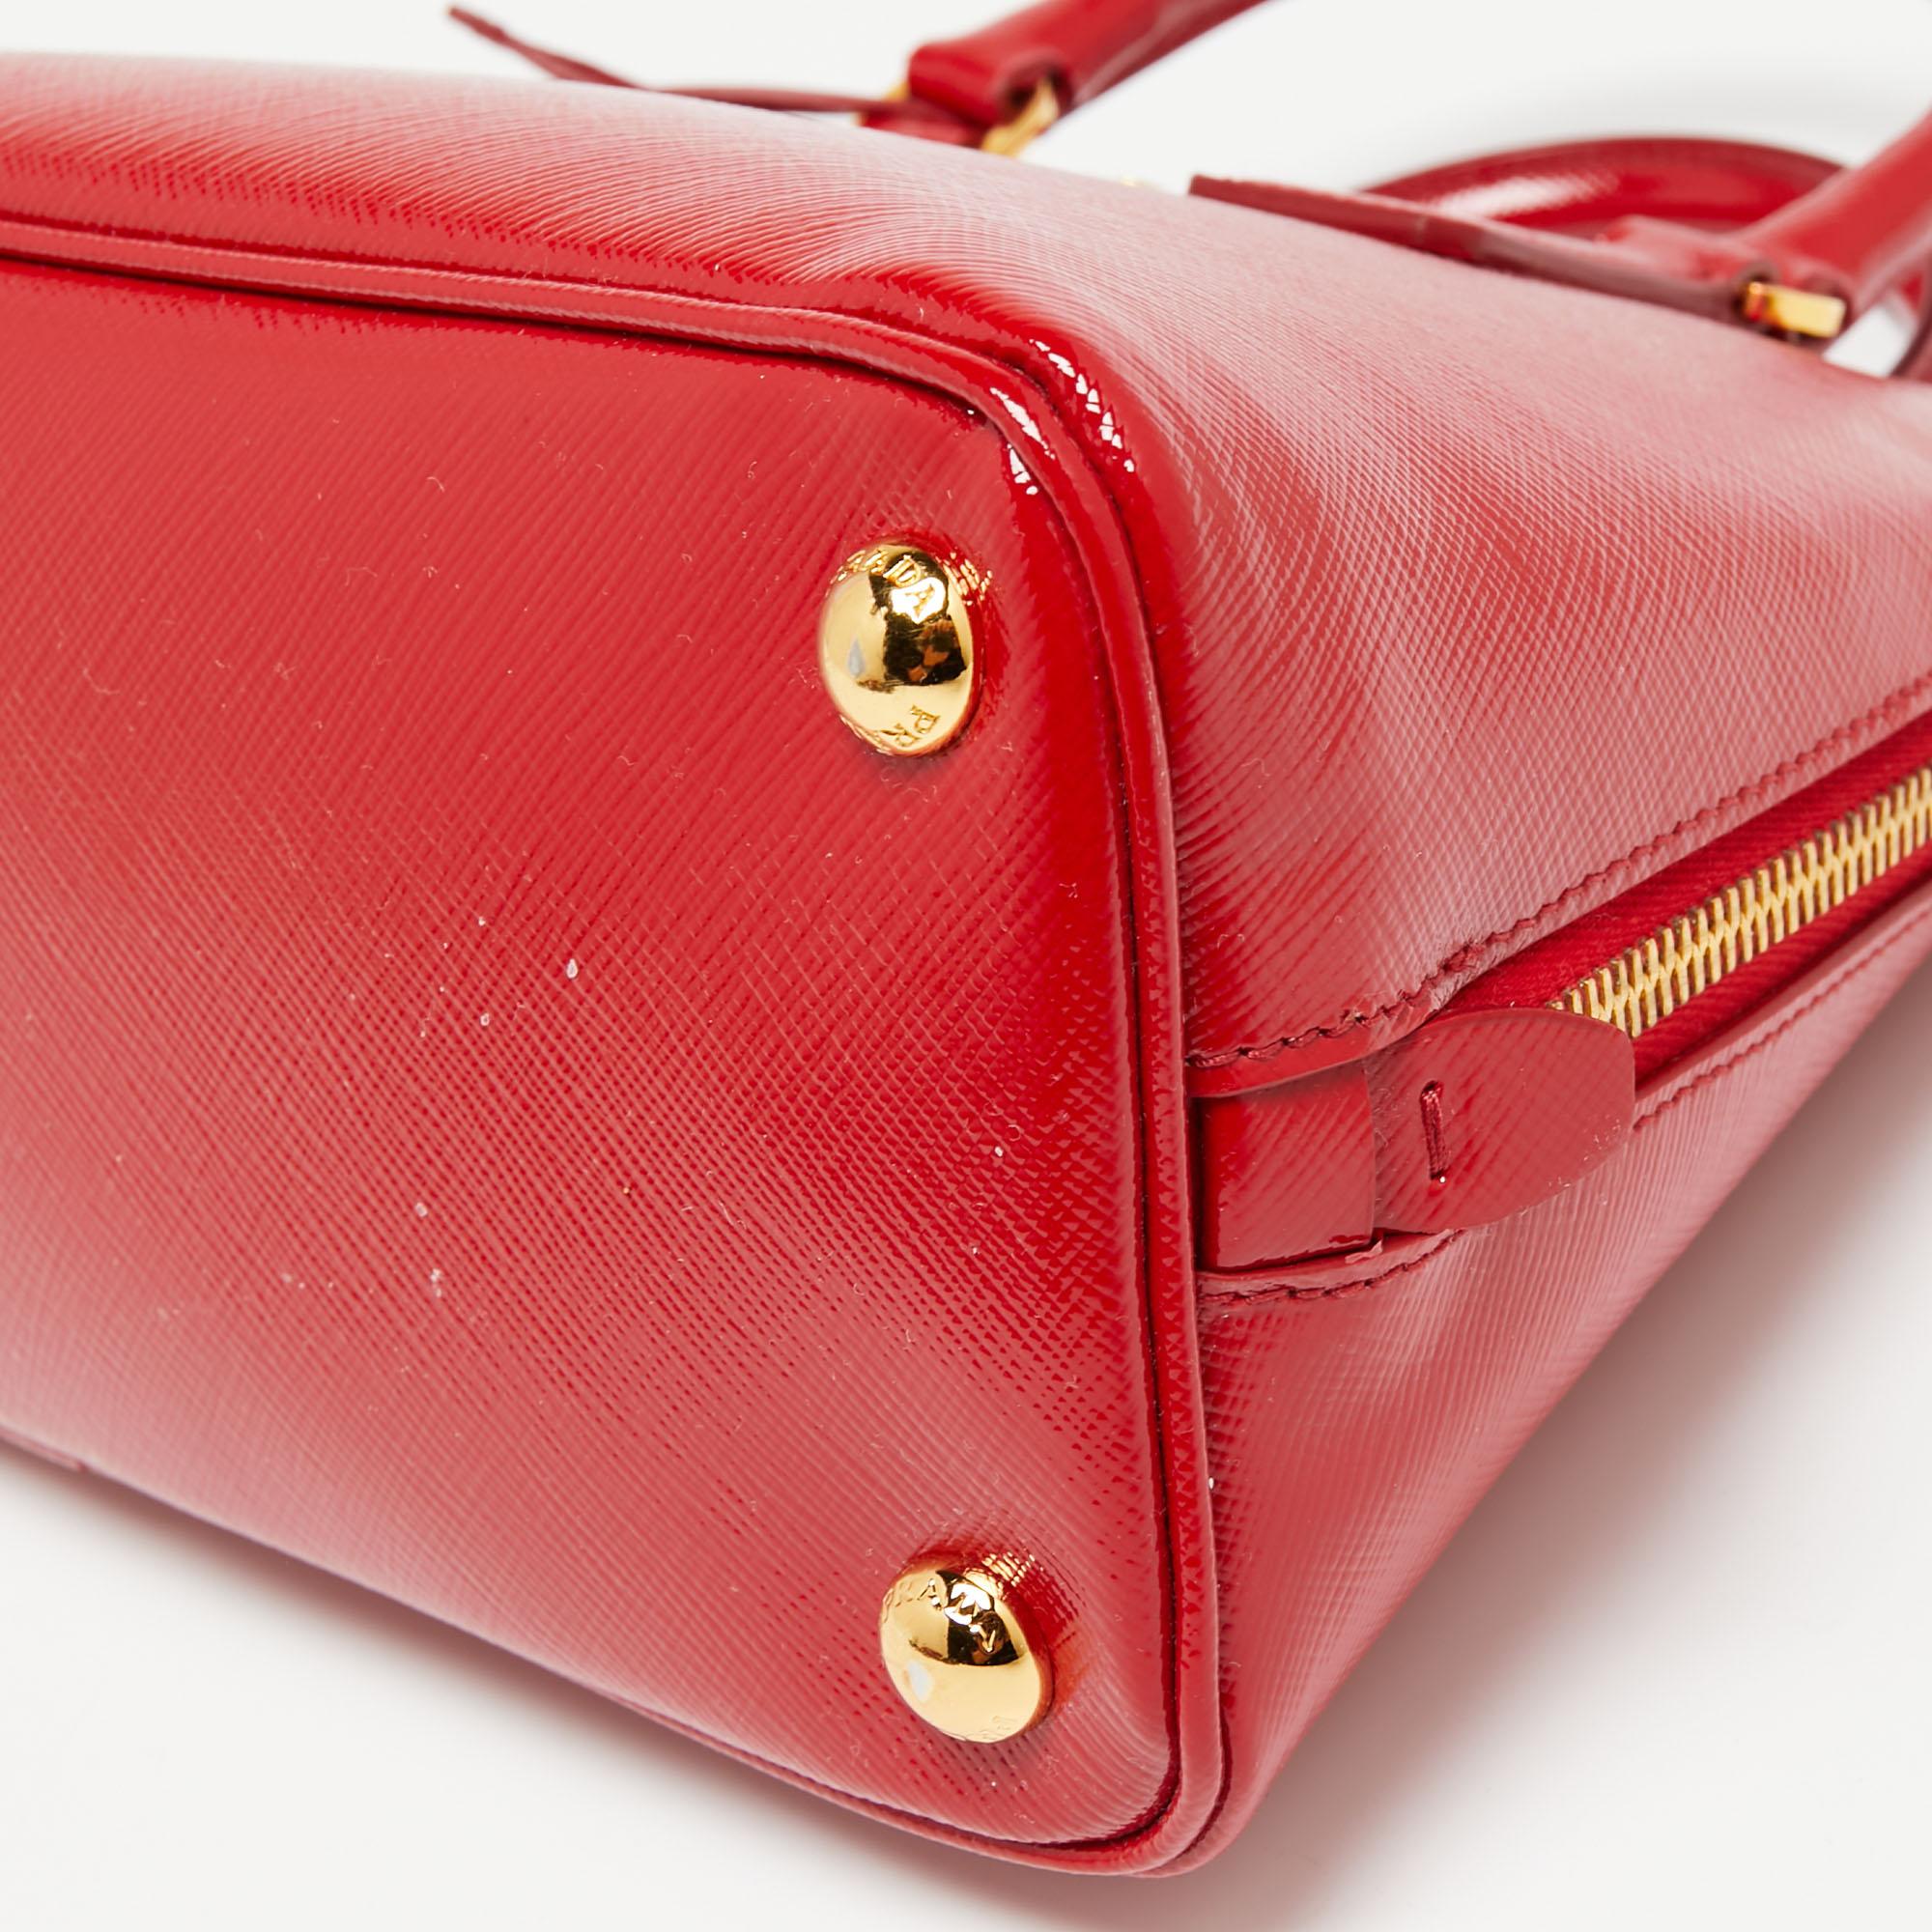 Women's Prada Red Saffiano Patent Leather Small Promenade Satchel